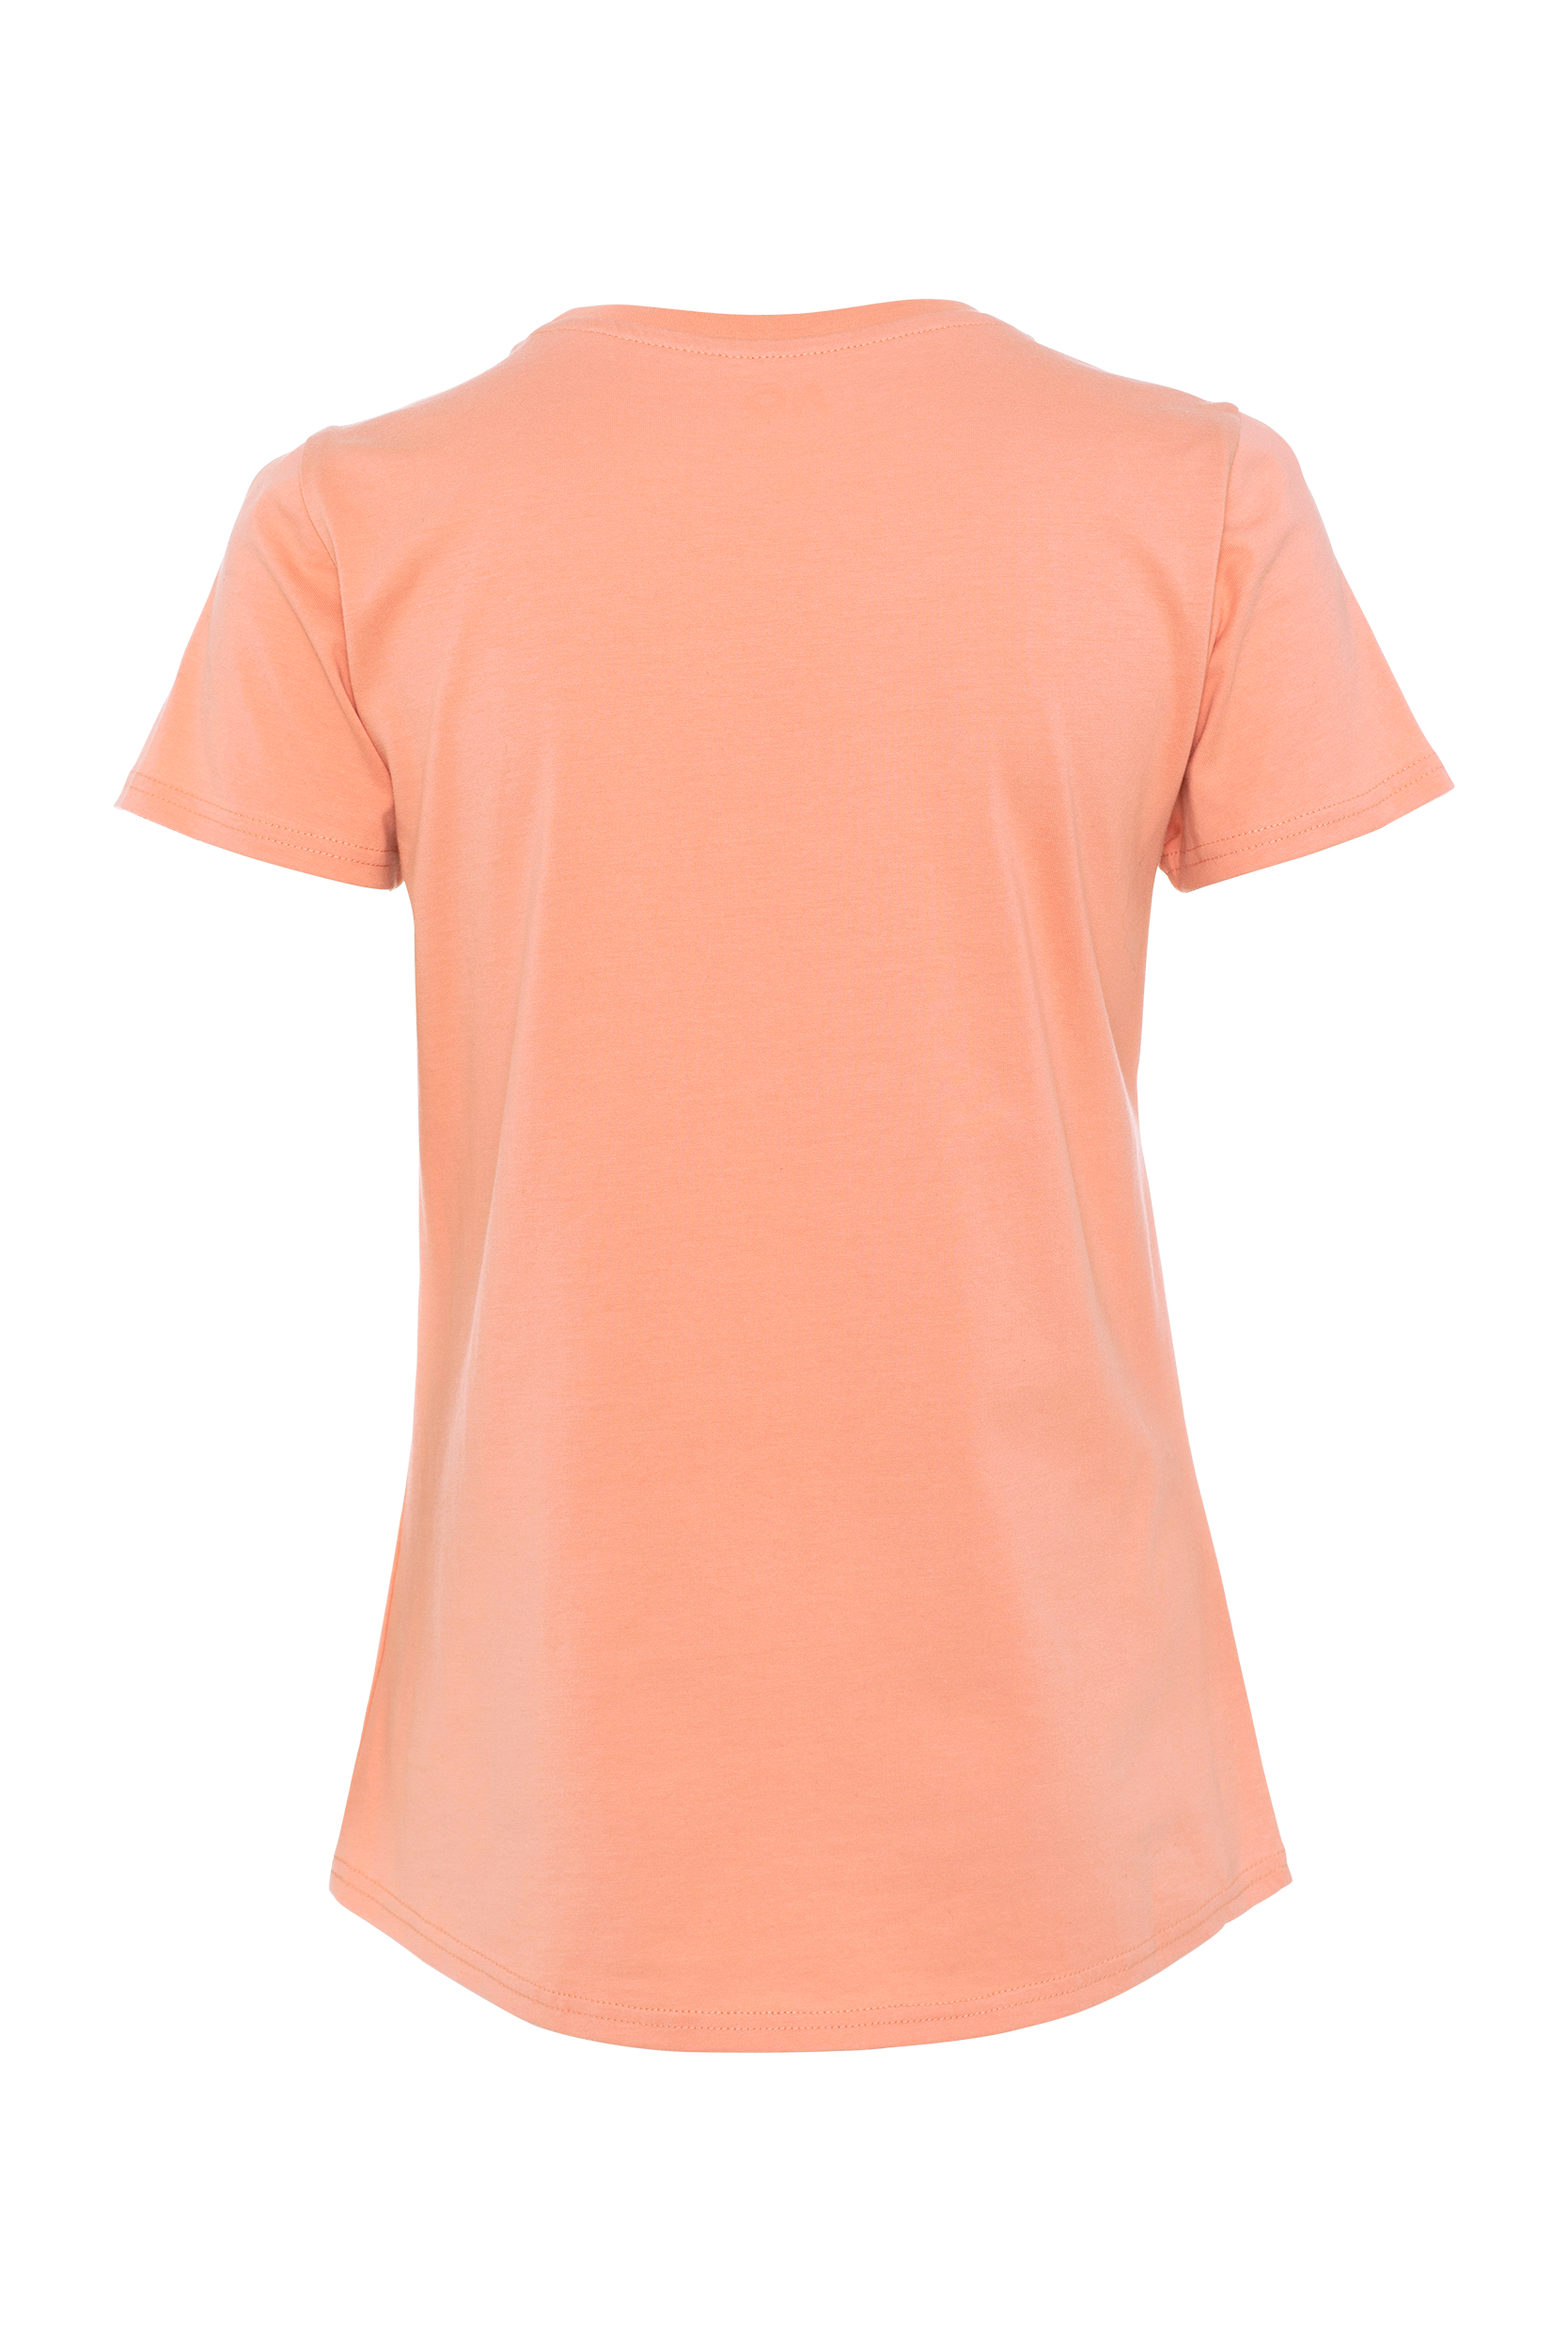 T-Shirt - Women's Australian Open Print - Pink